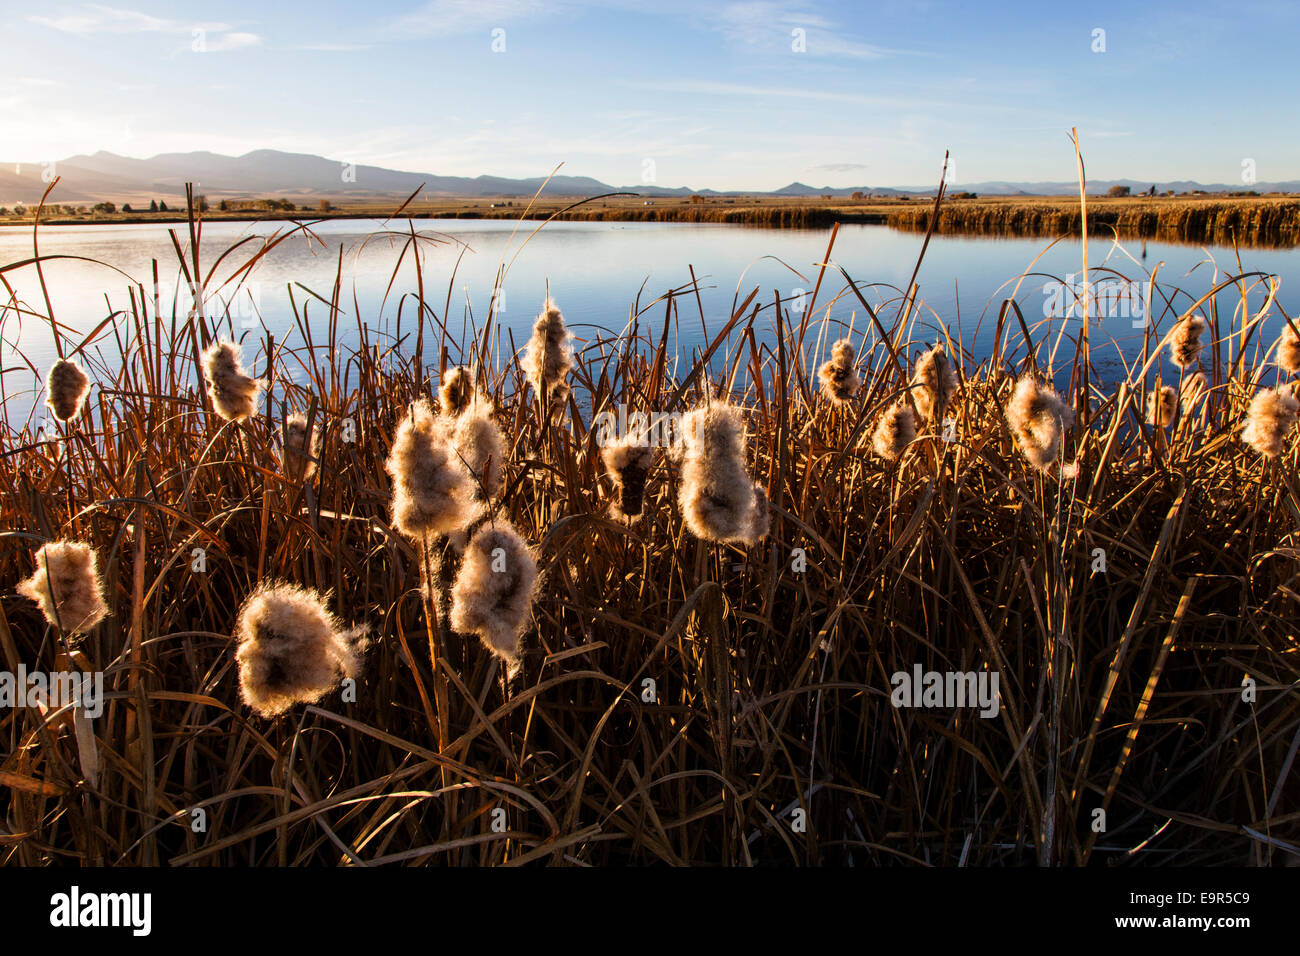 Cattails grow along ponds at the Monte Vista National Wildlife Refuge, Central Colorado, USA Stock Photo